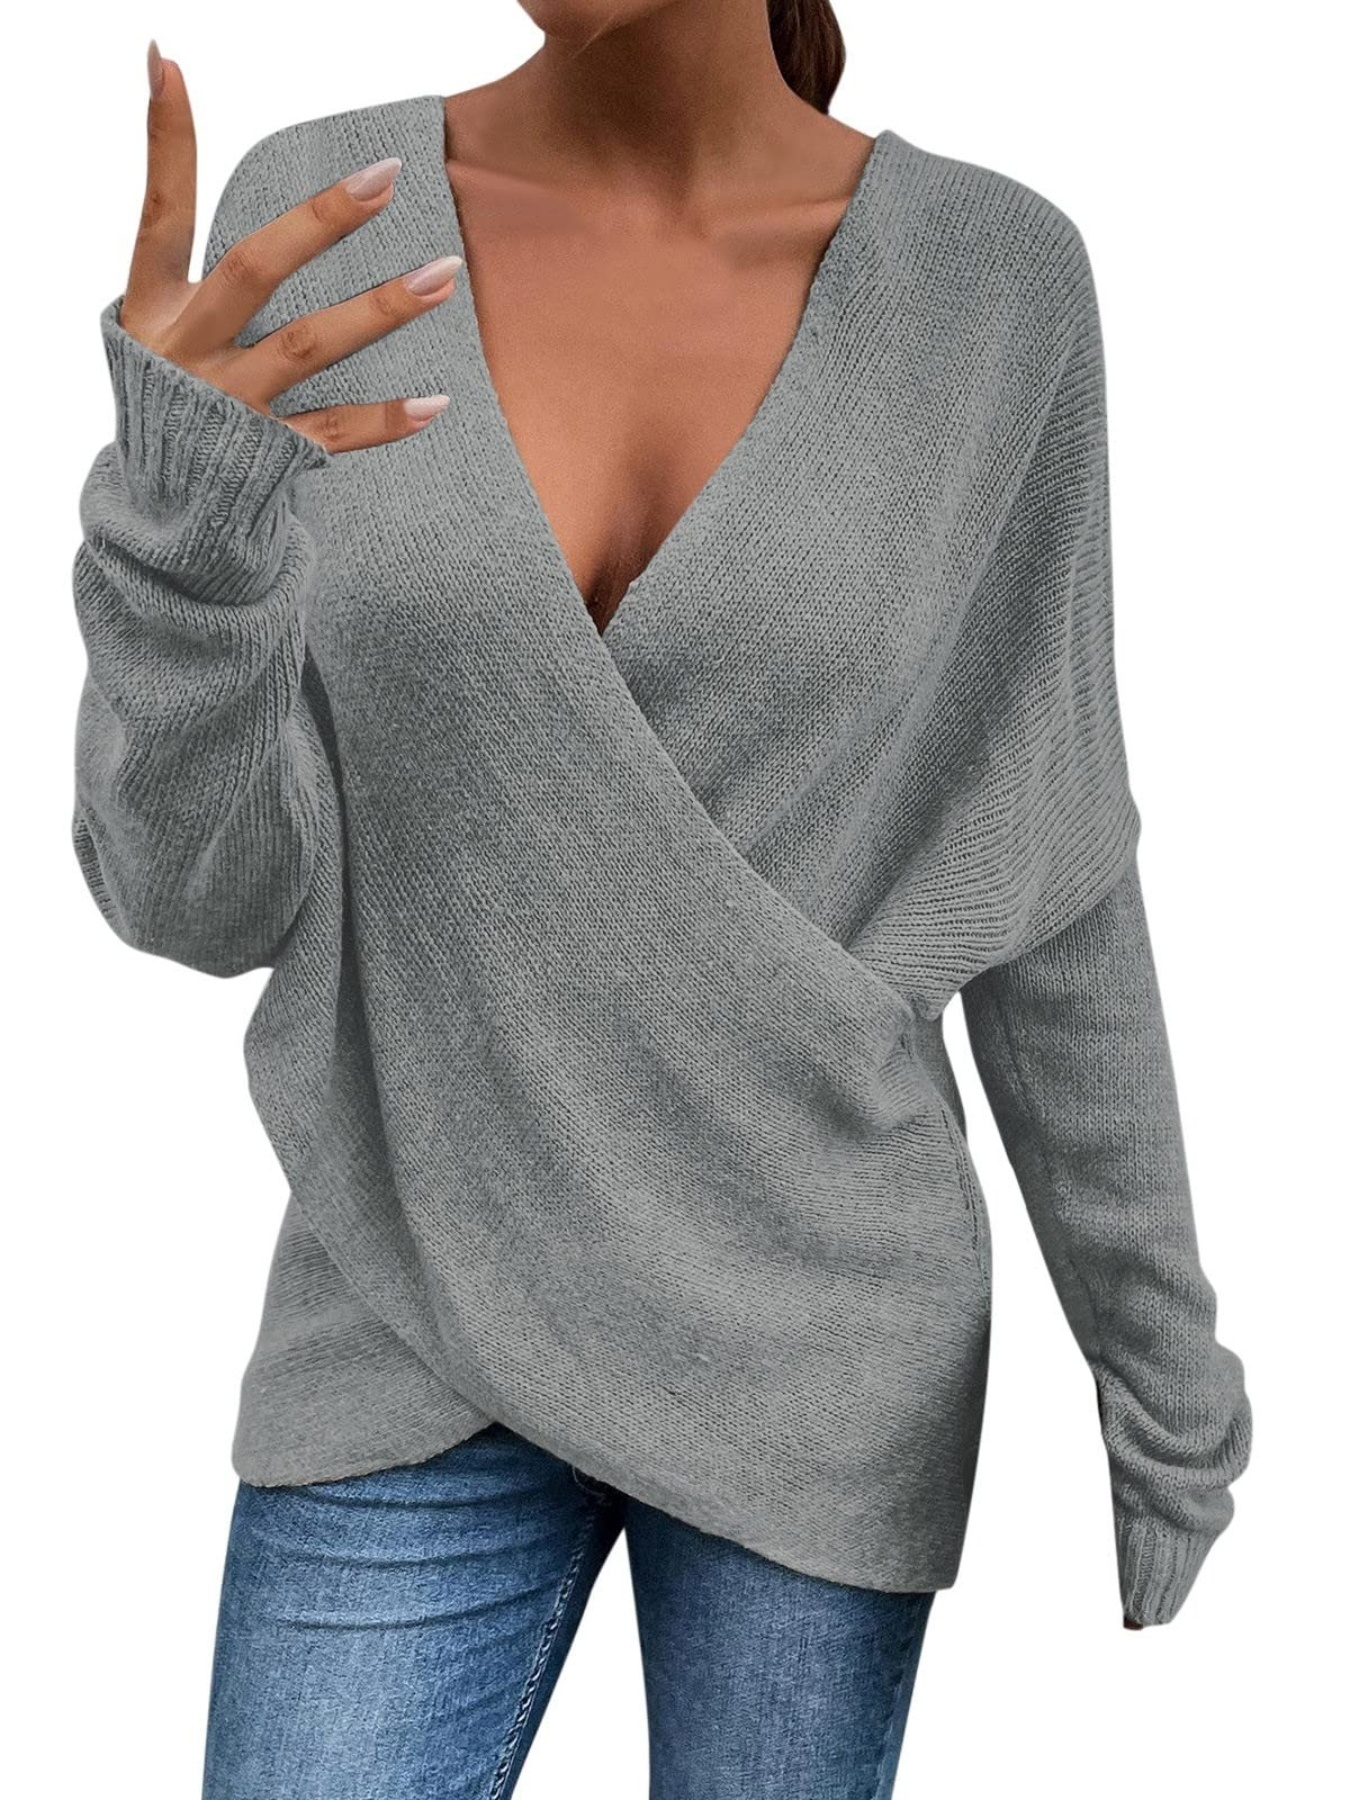 Sweater Mujer Otoño Tejido Largo AZ050